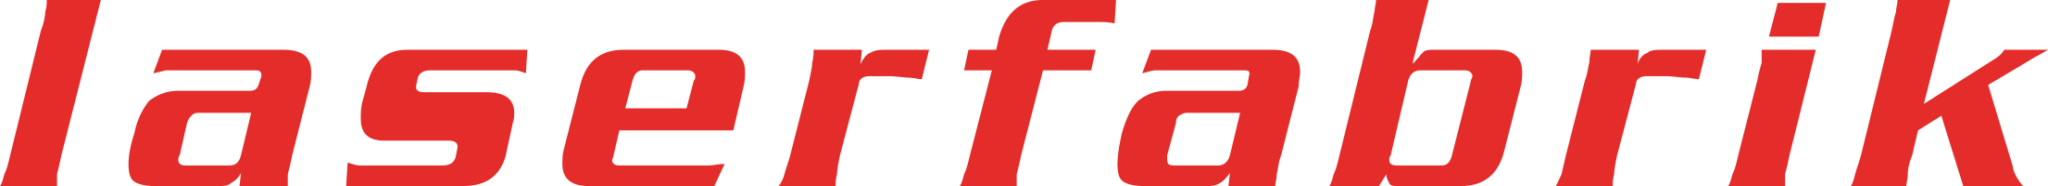 laserfabrik logo